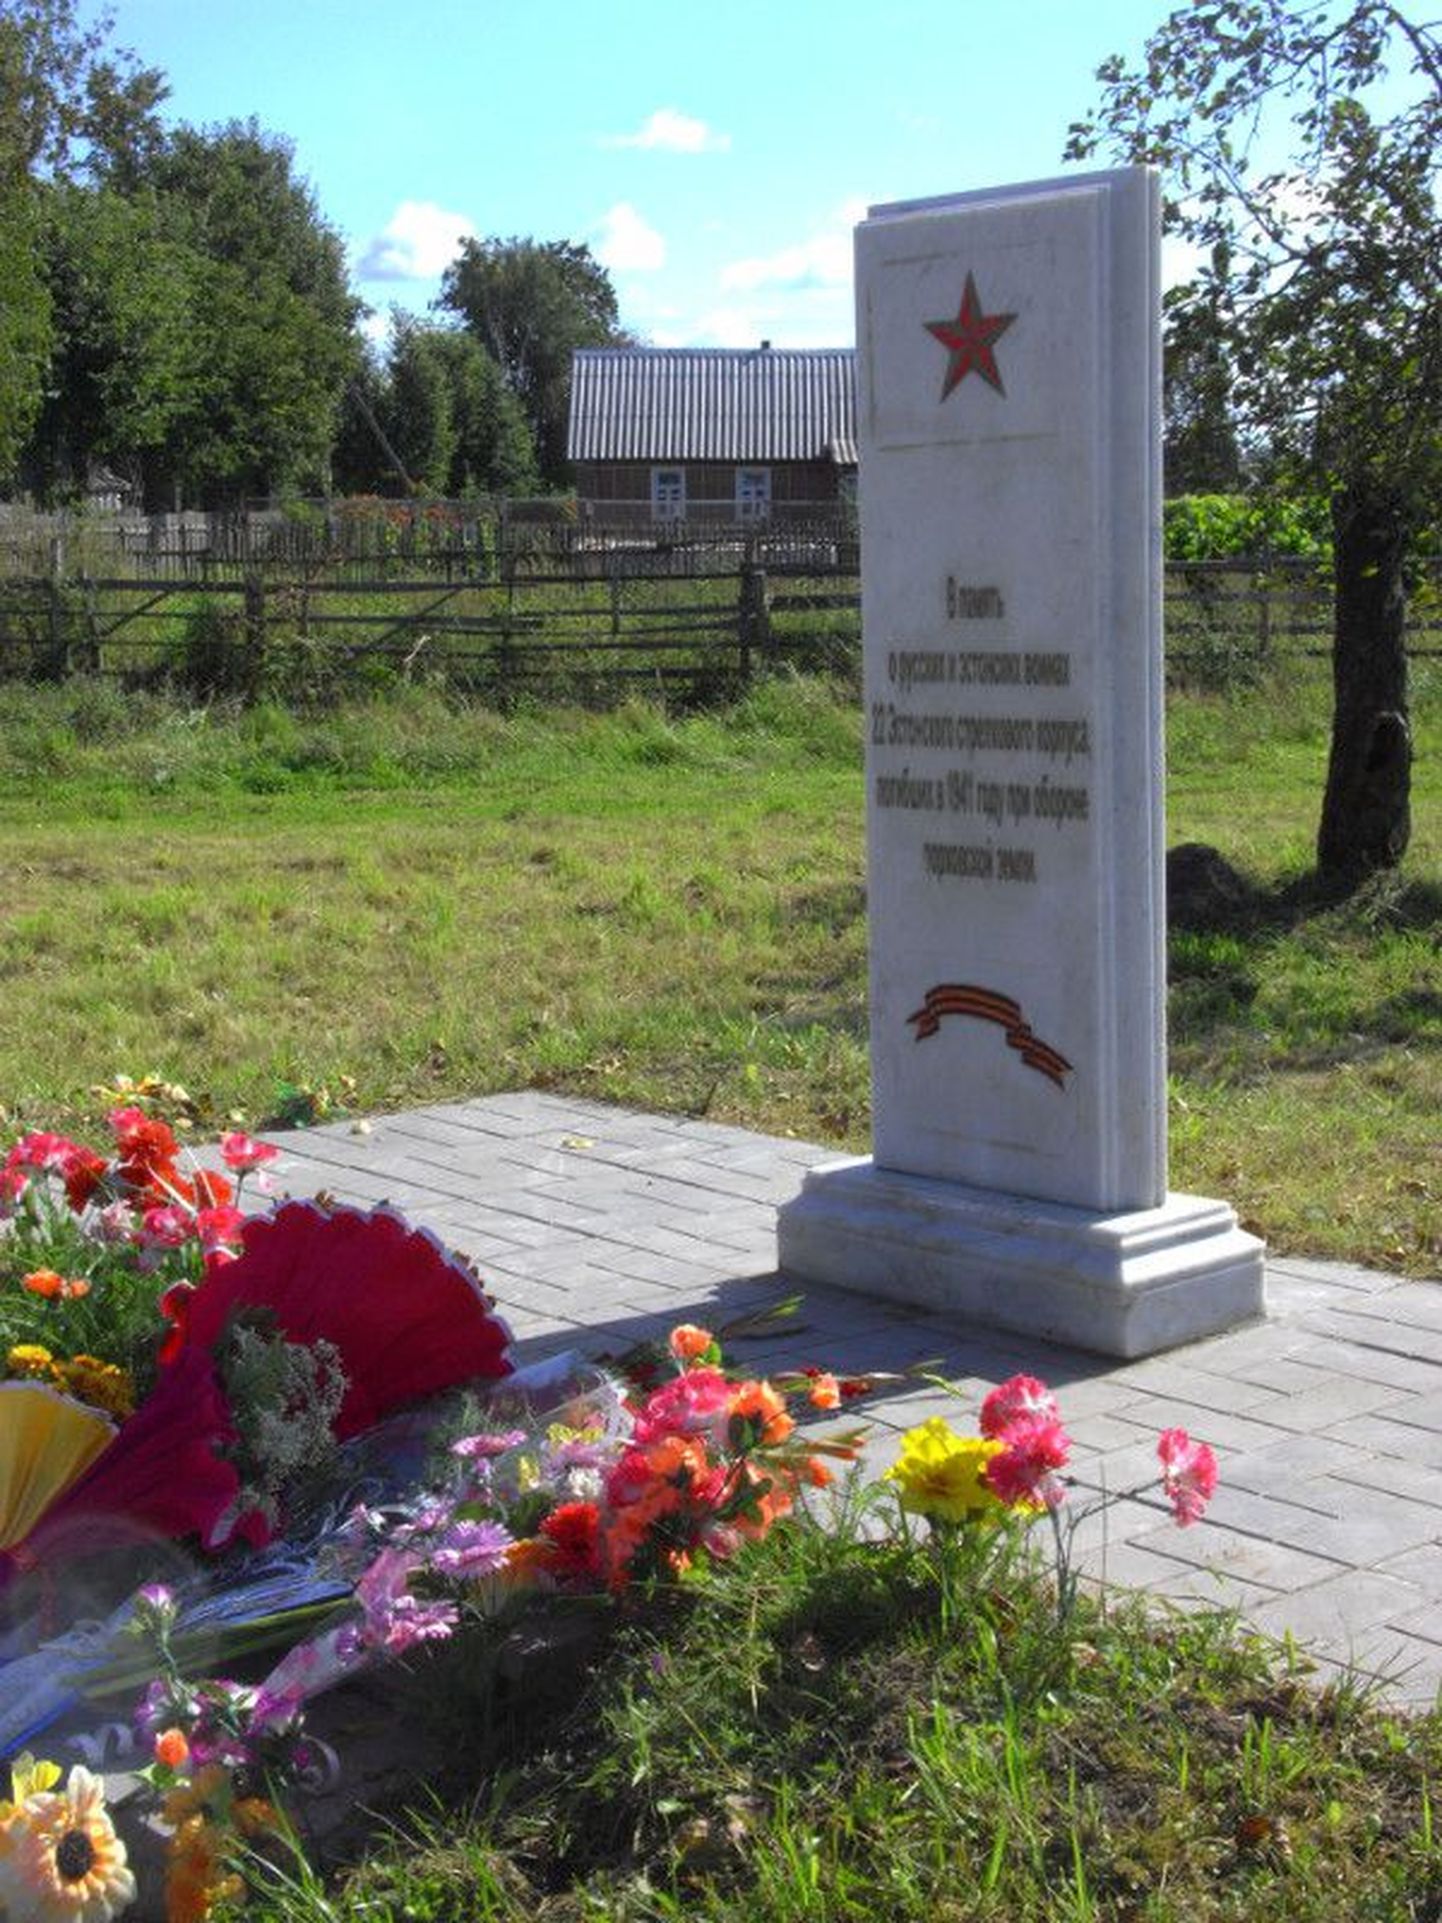 Памятник 22-му Эстонскому корпусу в Порховском районе, соседнем с тем, о котором идет речь.